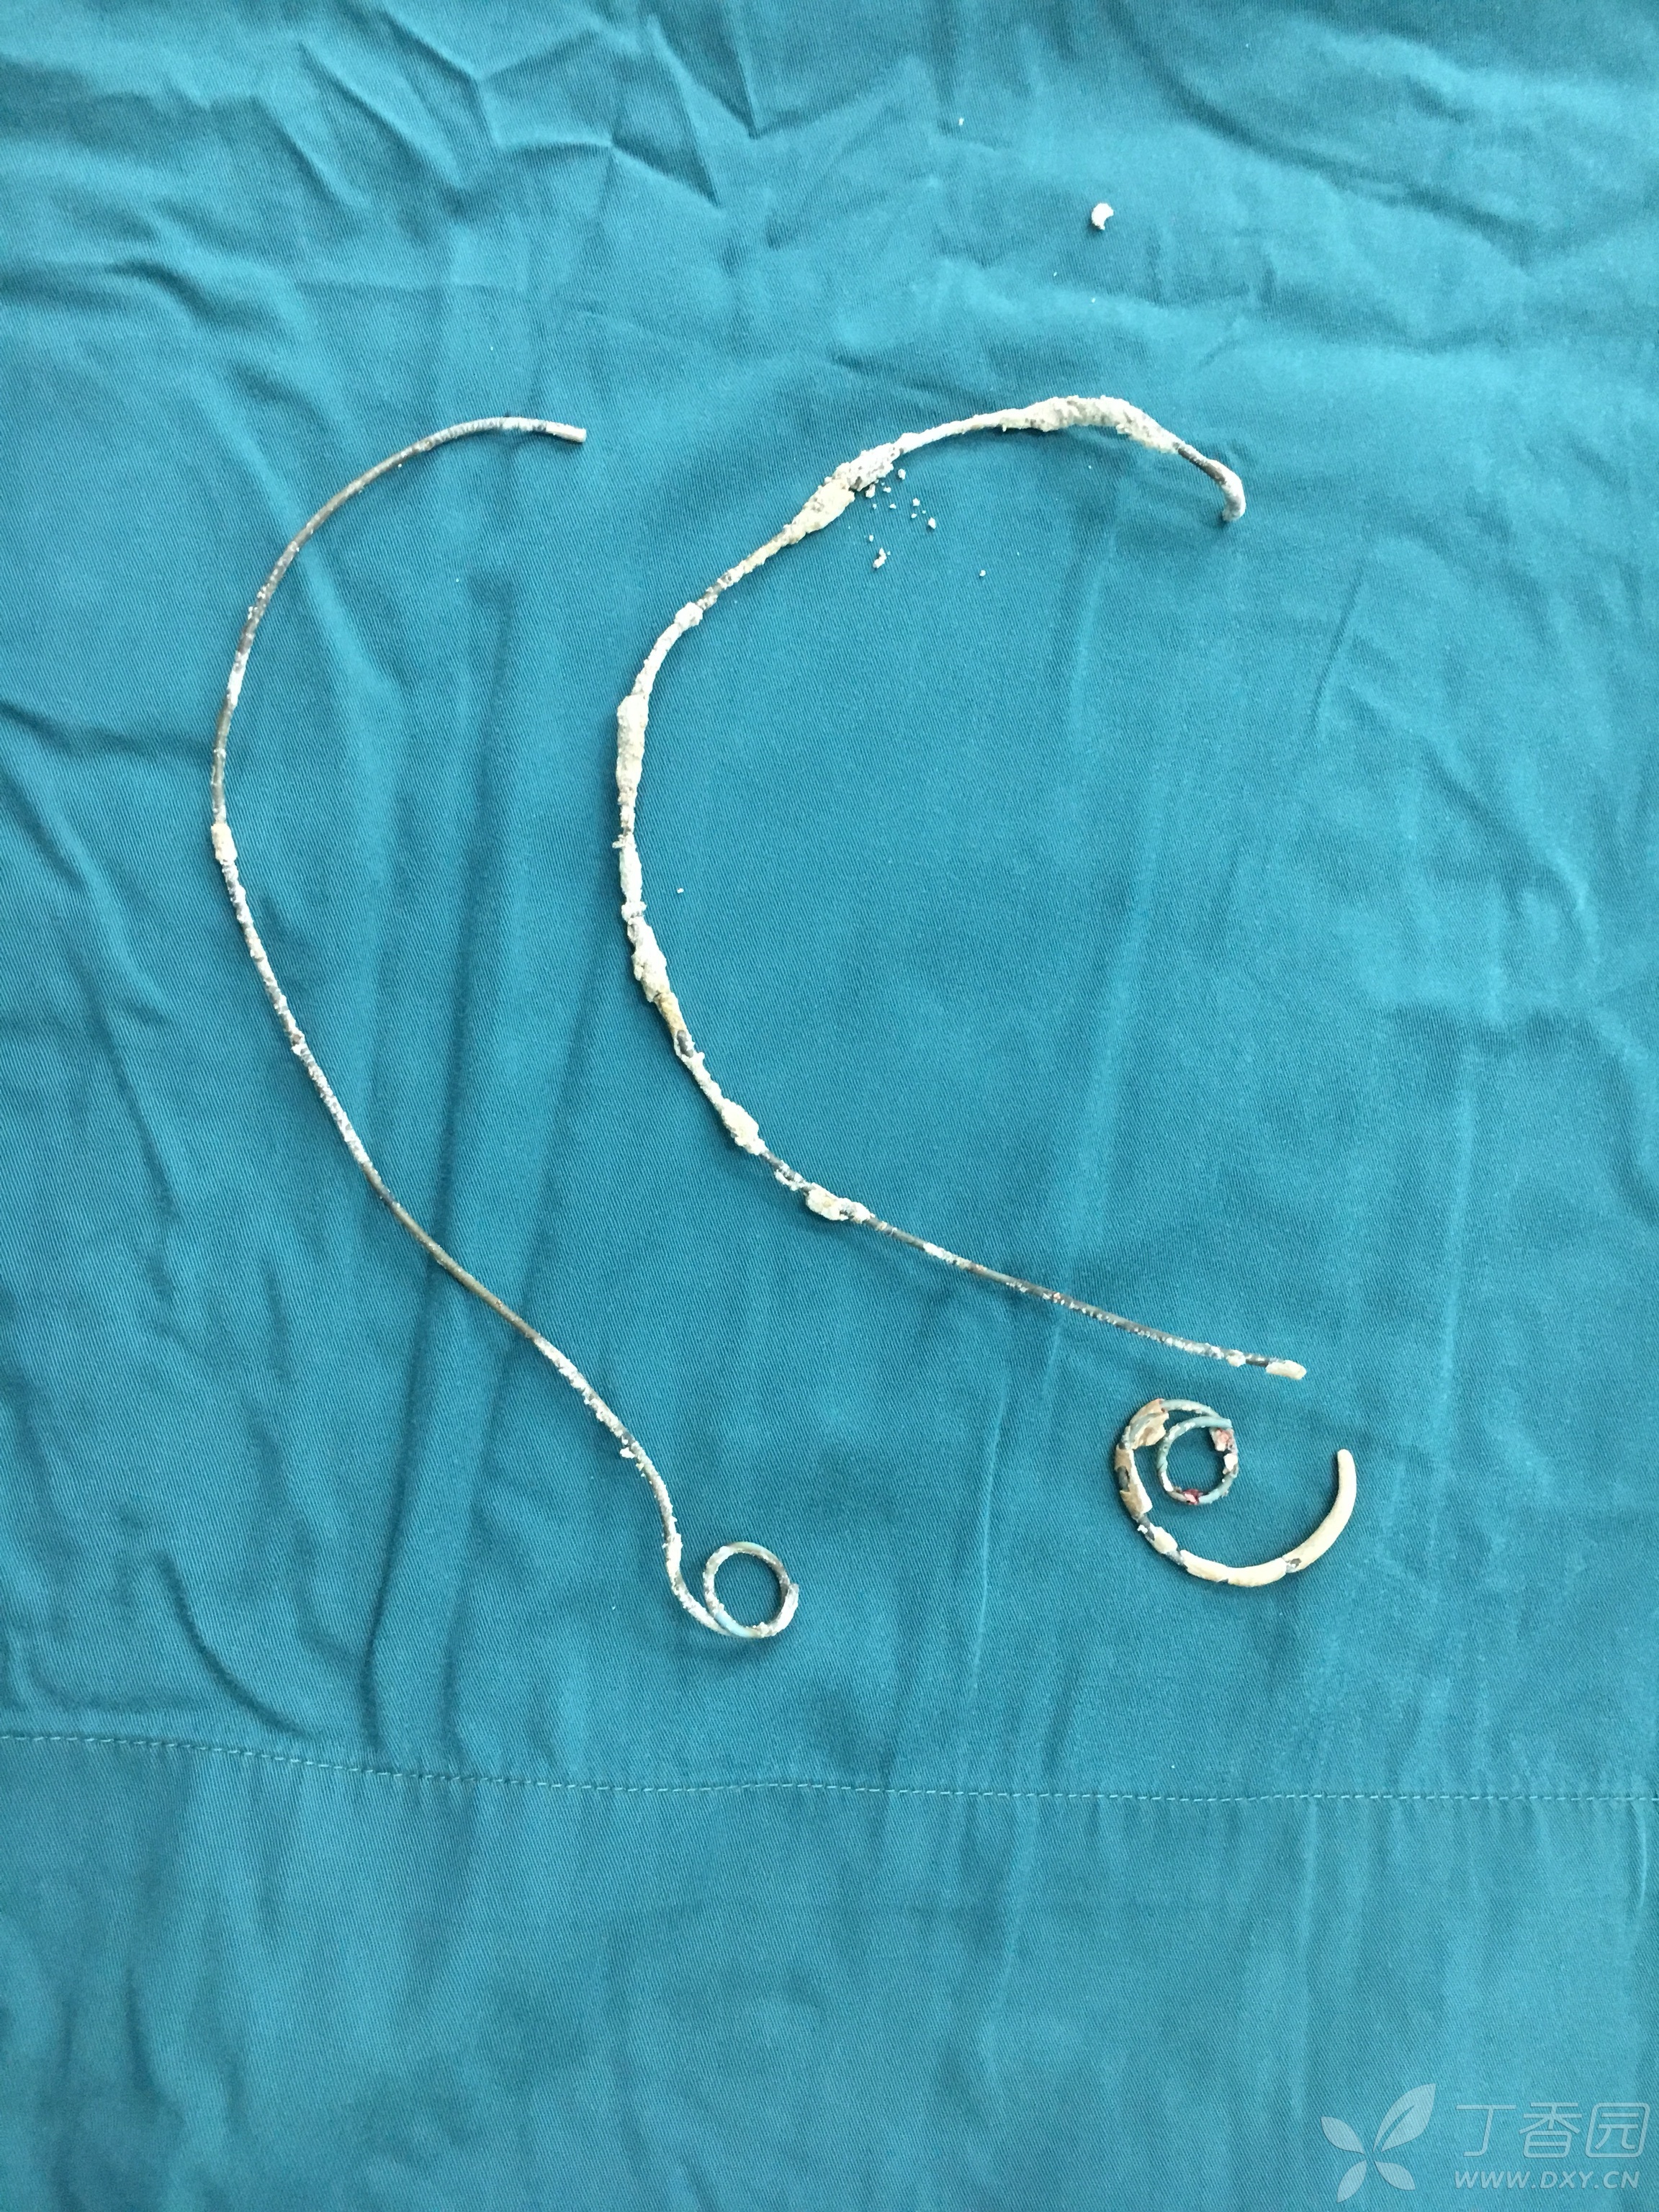 分享一例输尿管支架管滞留3年的女性患者成功拔出输尿管支架管的故事